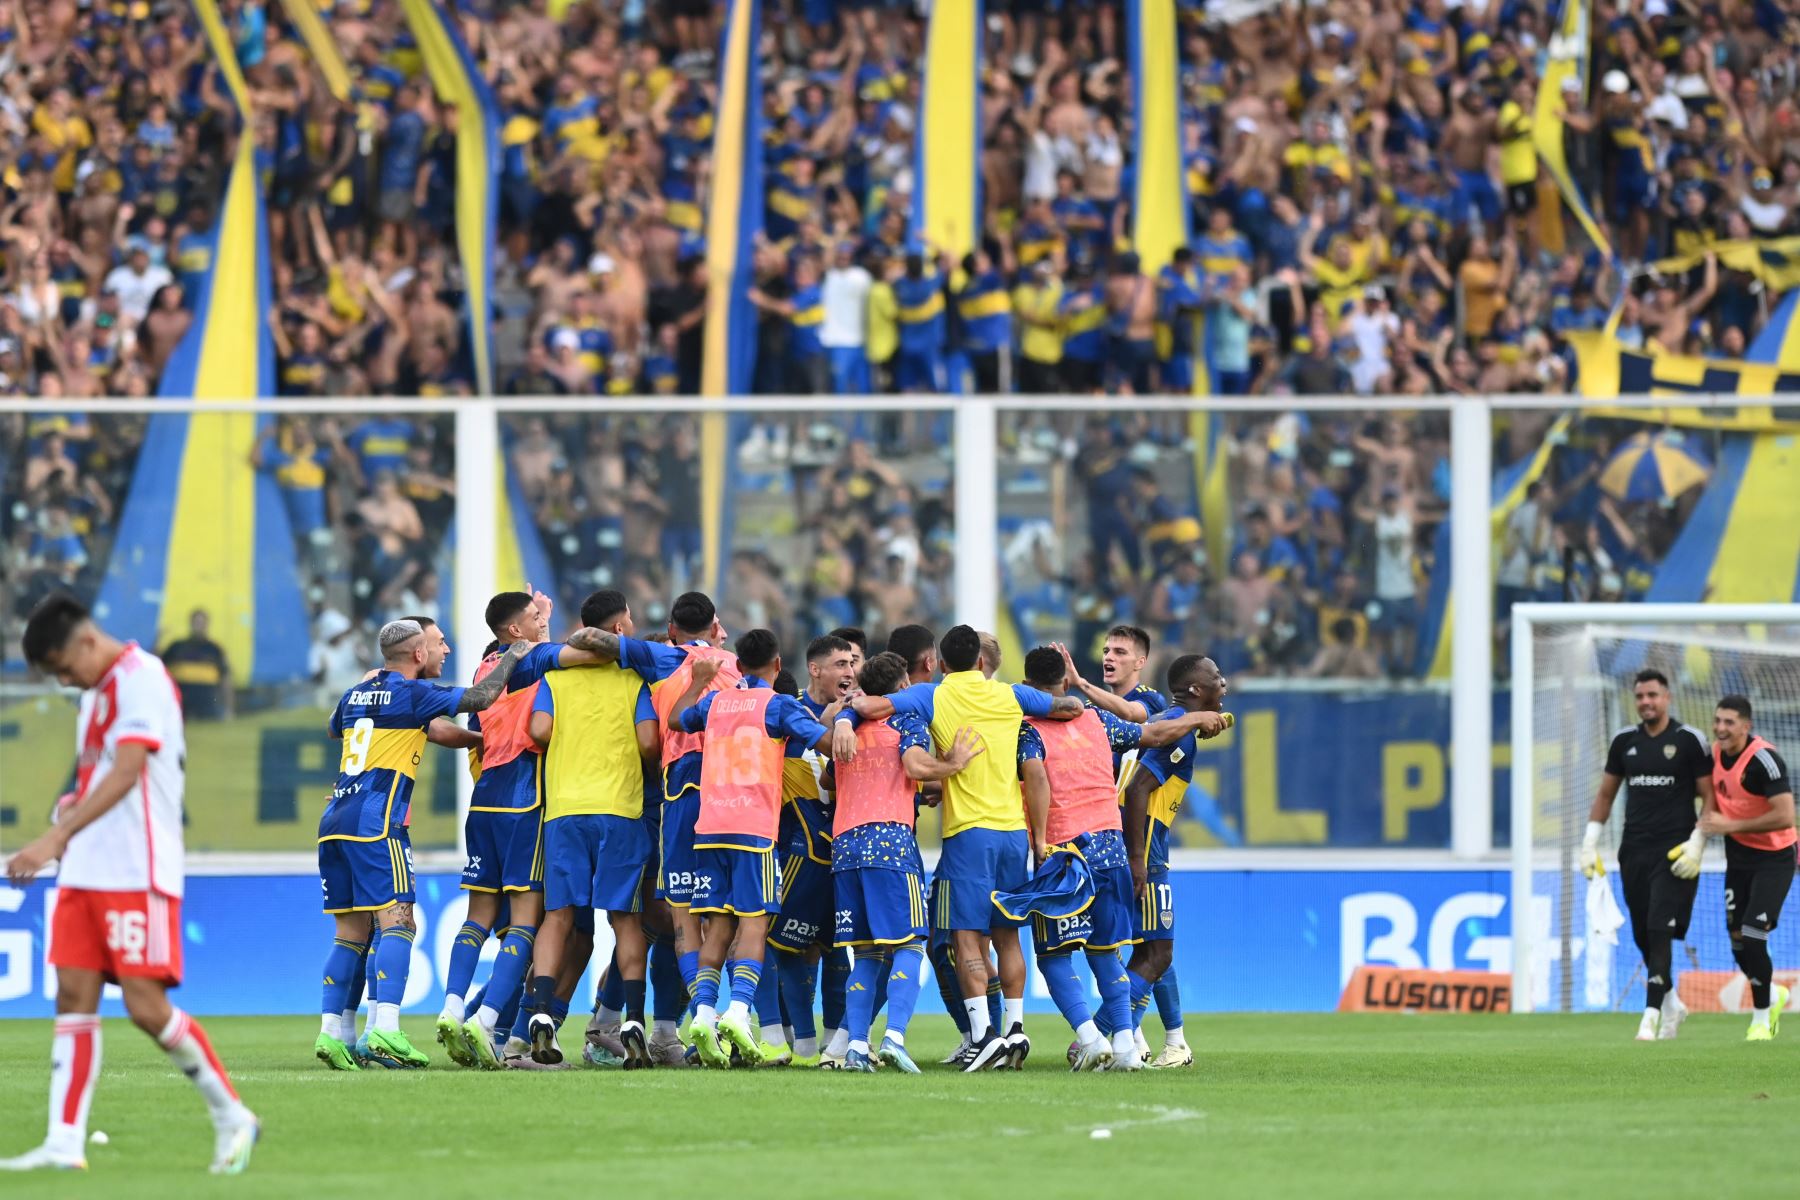 Jugadores de Boca Juniors celebran el triunfo de su equipo ante River Plate este domingo, en un partido de los cuartos de final de la Copa de la Liga argentina en el estadio Mario Alberto Kempes en Córdoba, Argentina. Foto: EFE